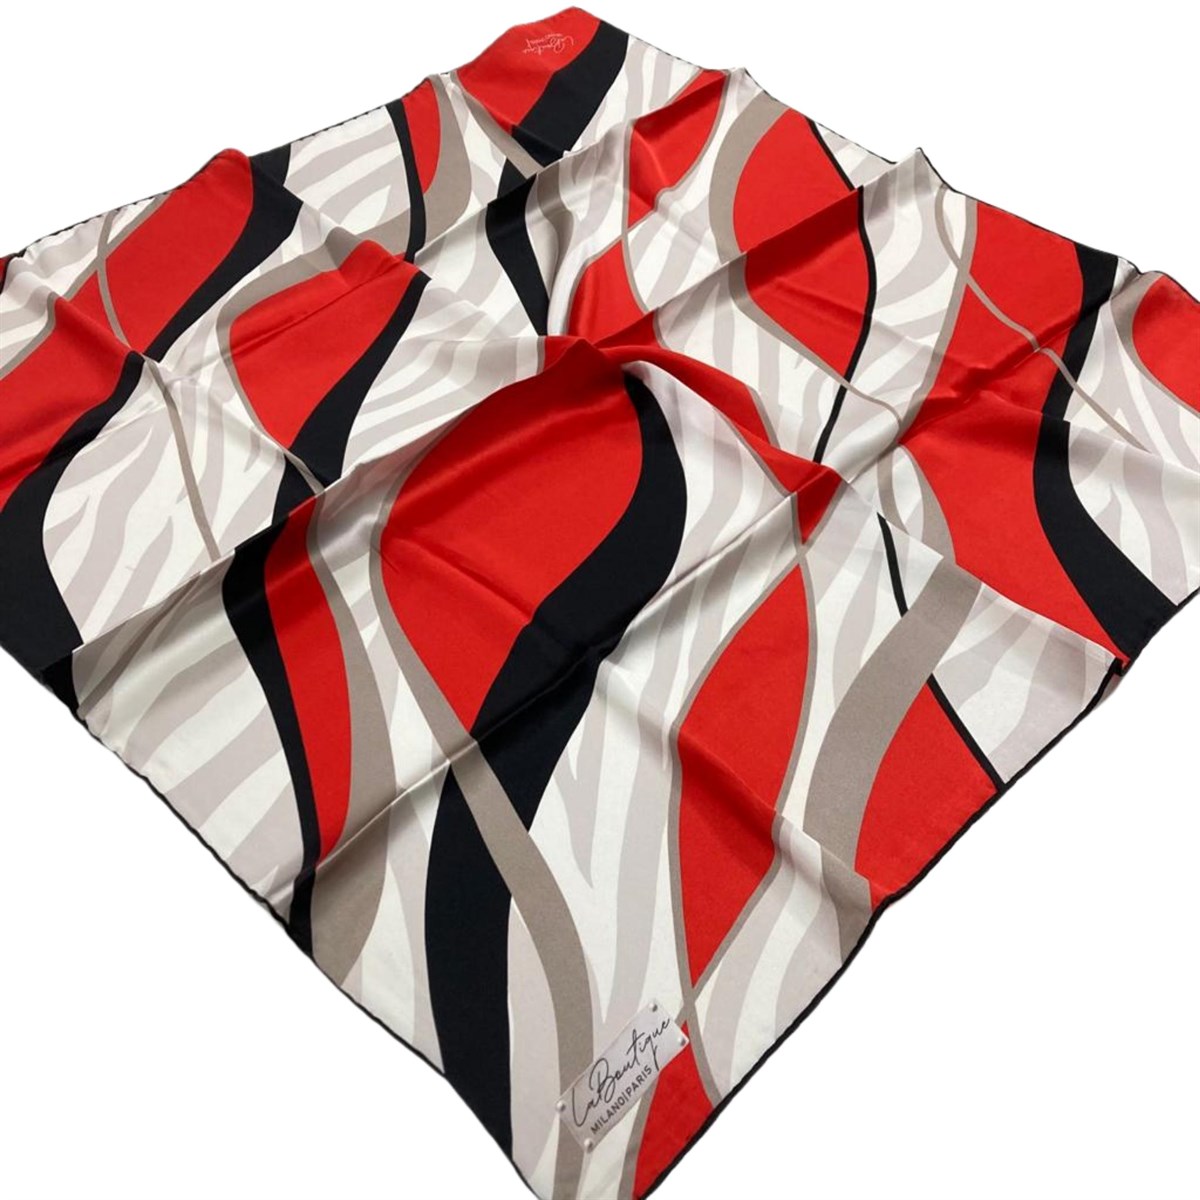 La Boutique Defolu Siyah Kırmızı İpek Eşarp 1601-55 Renk:  Siyah,kırmızı,vizon,kirli beyaz